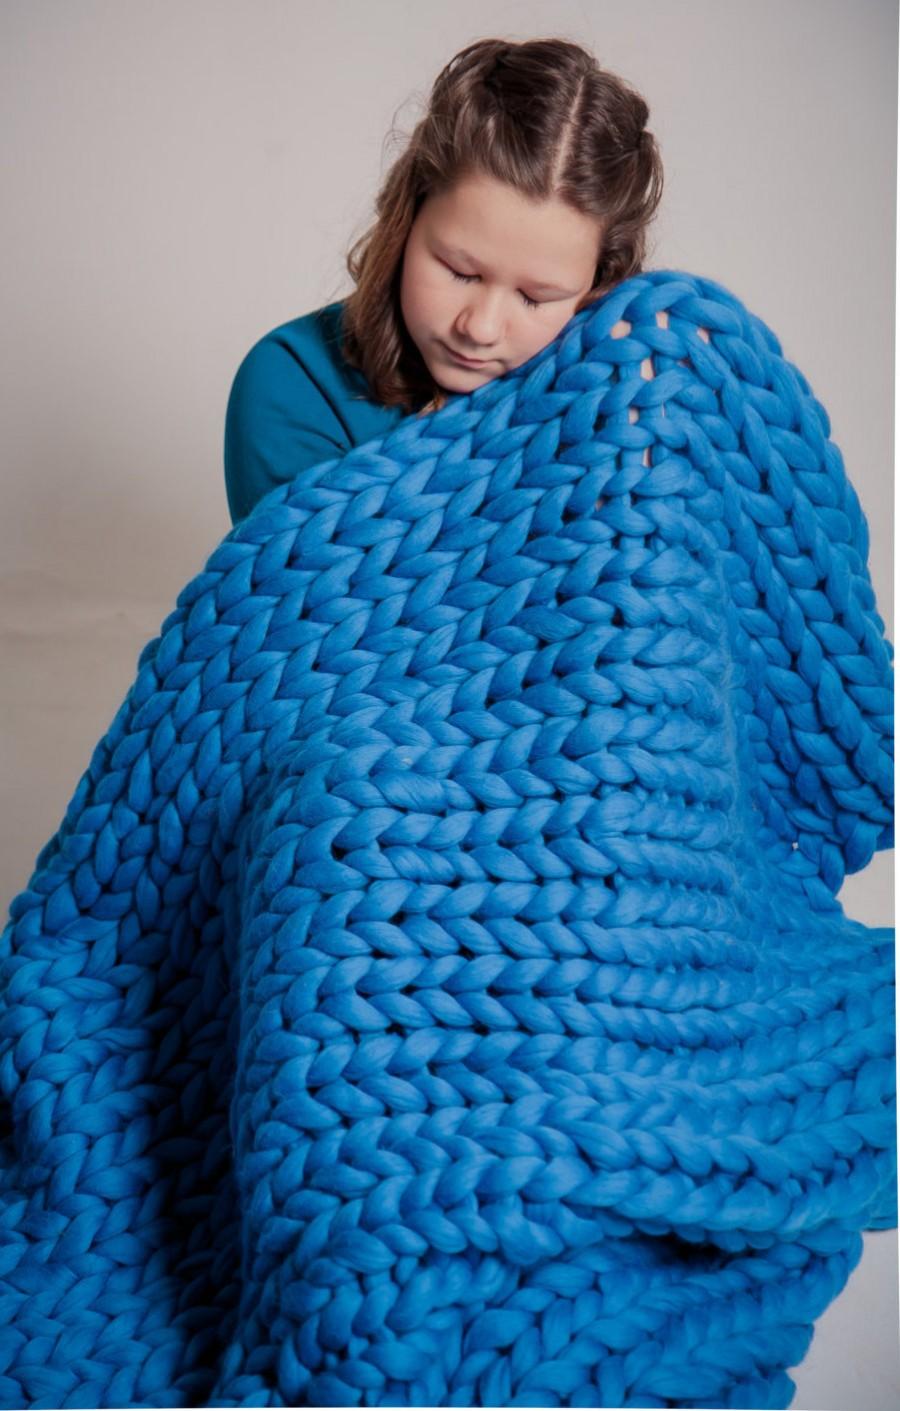 زفاف - Chunky blanket throw, Giant knitted afghan blanket, Pure Wool Giant Blanket, Bulky Knit Throw, Chunky Knitting, Lap blanket. Gift, Blue